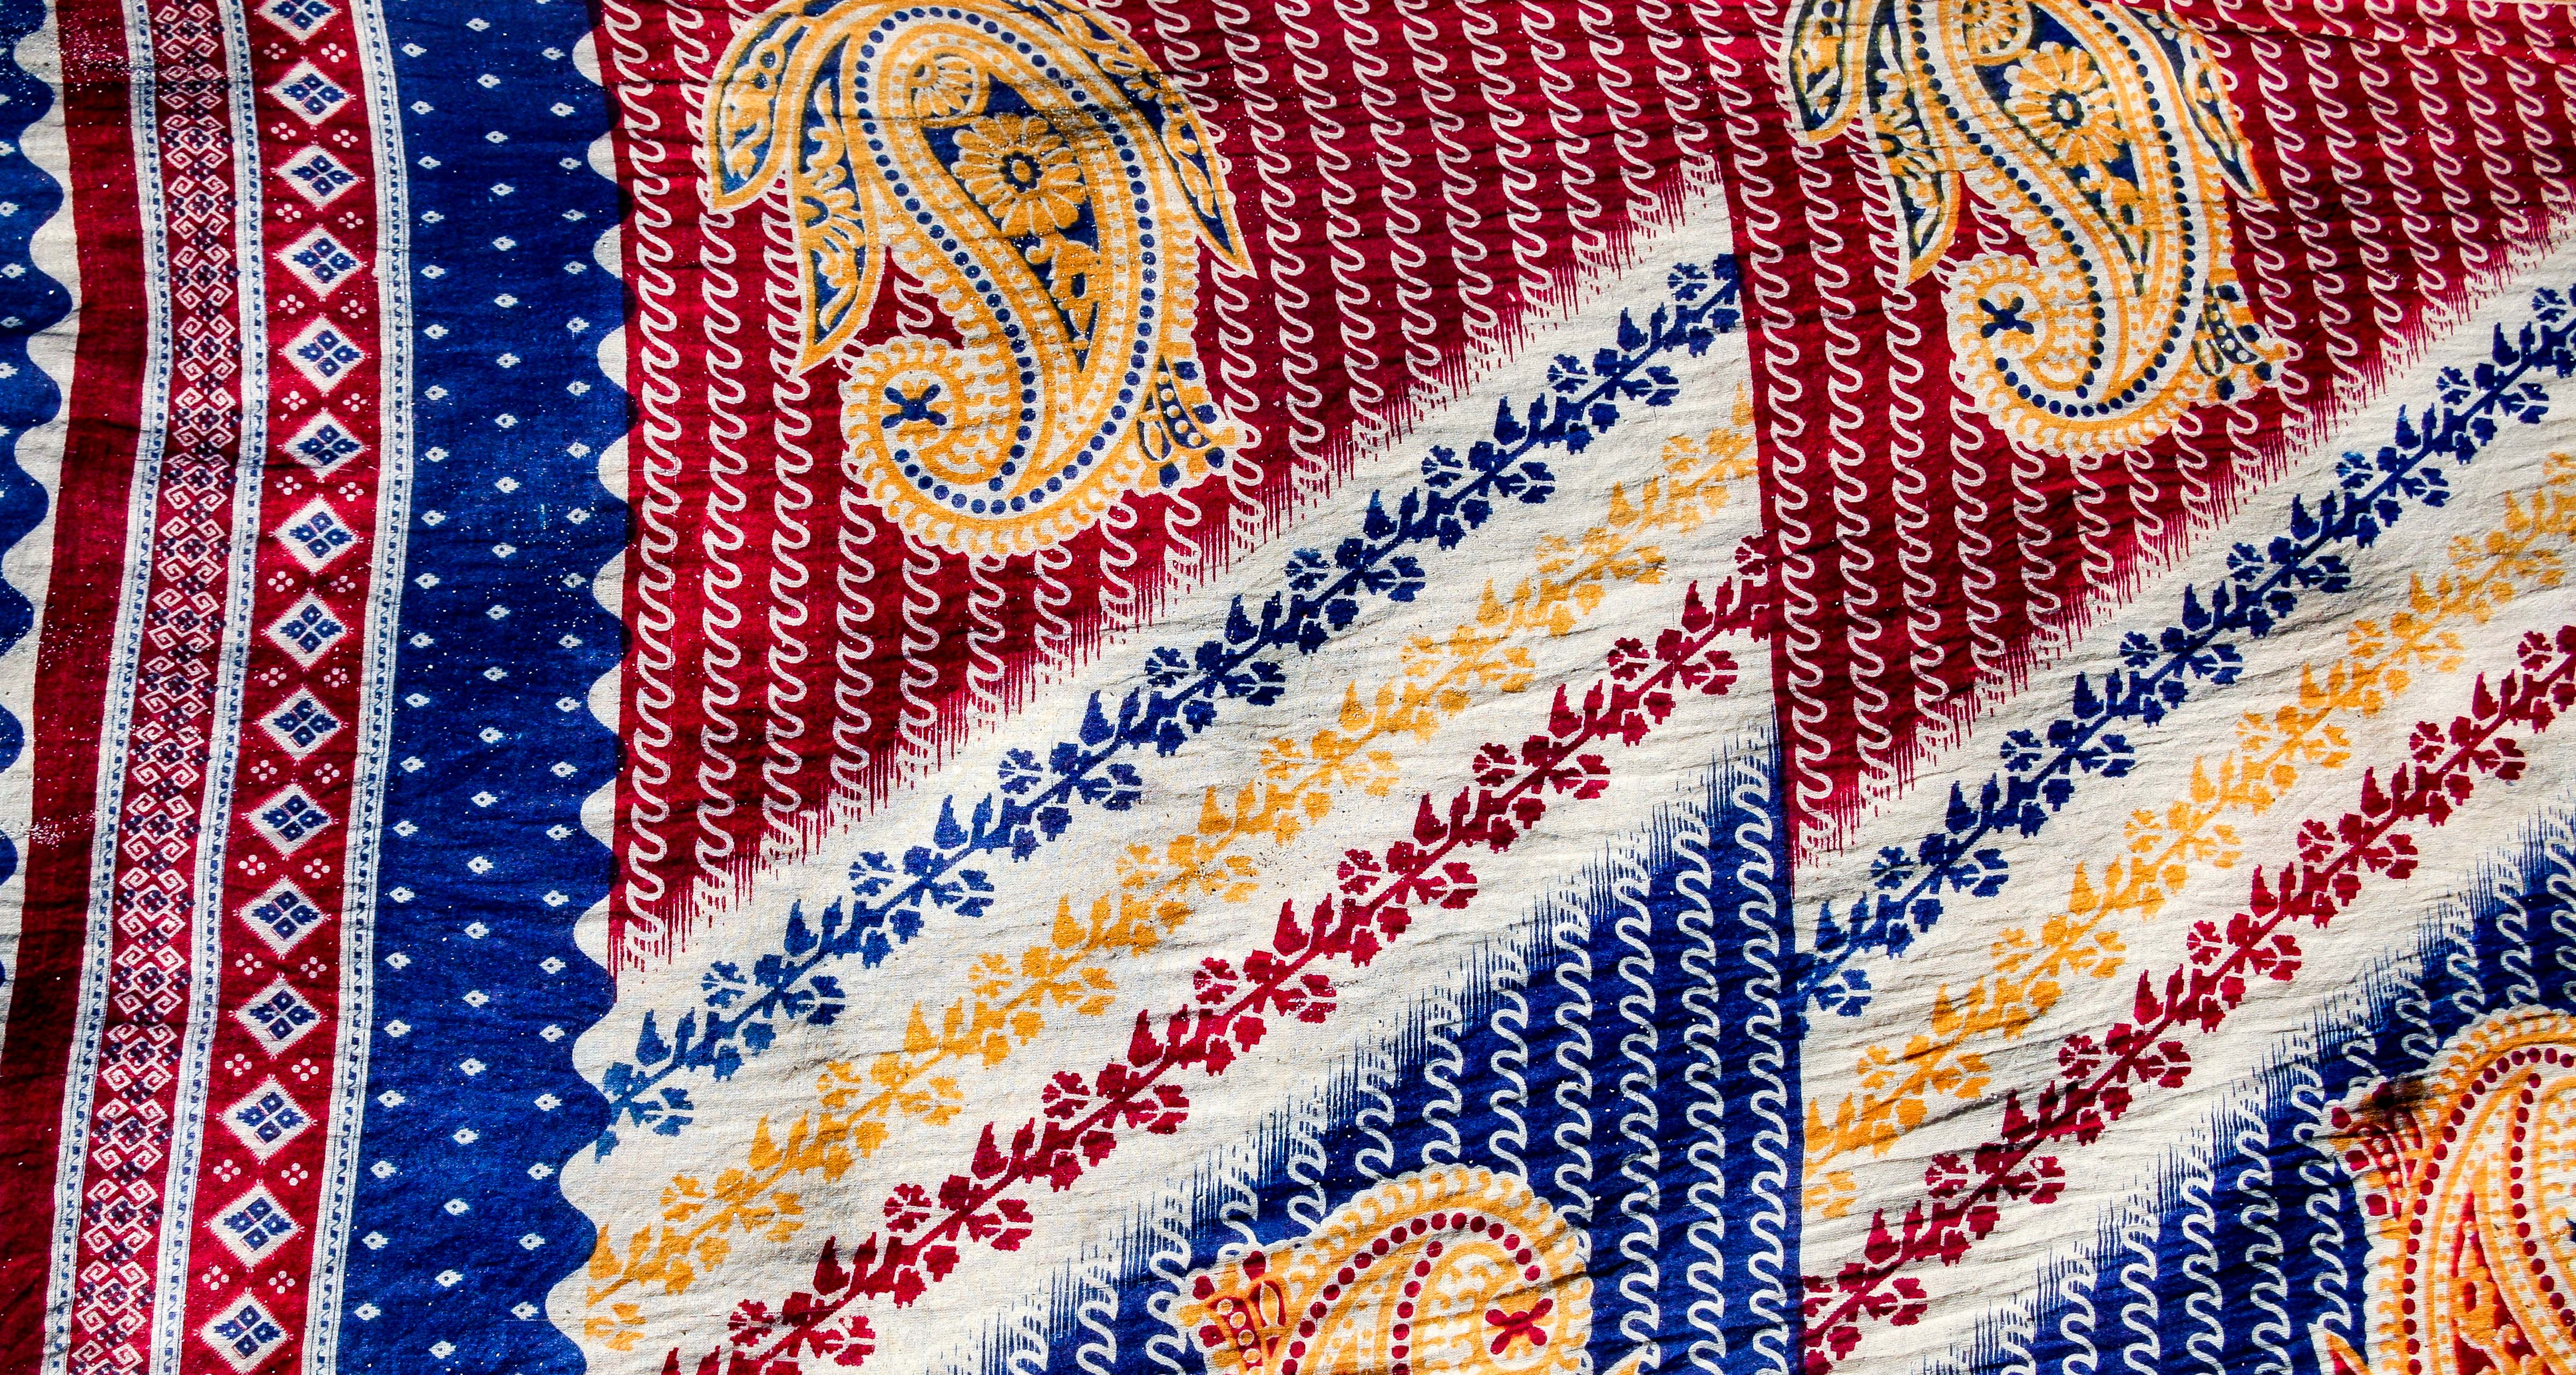 Bangladesh, Sylhet Prov, Fabric Detail, 2009, IMG 8231